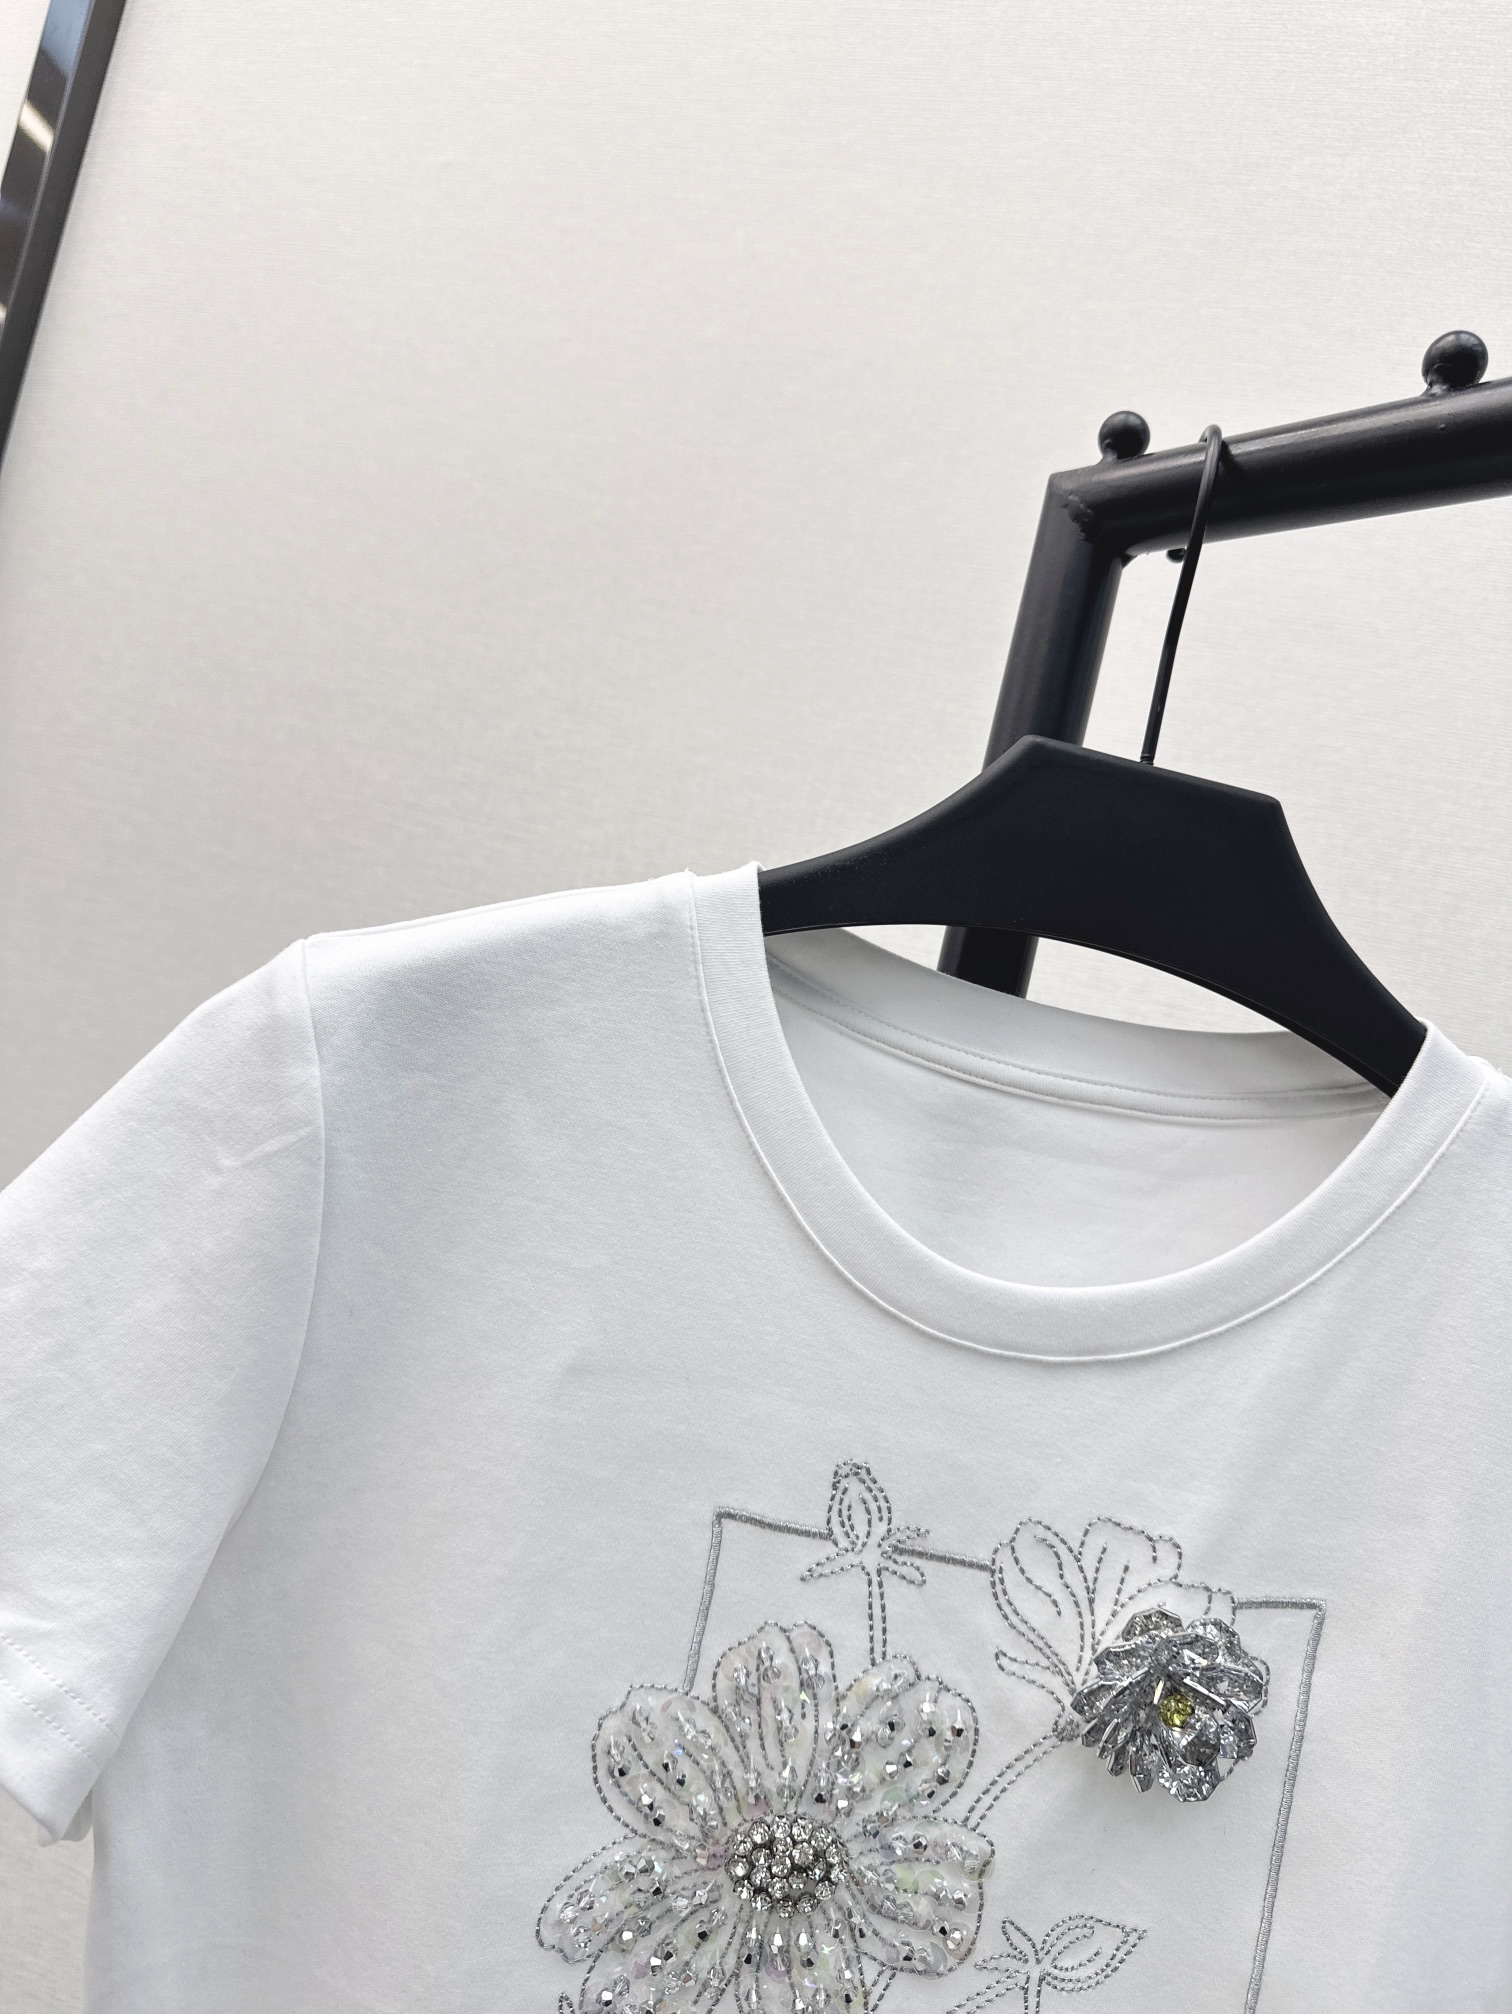 时髦单品24Ss春夏最新款Mini修身T恤轻松打造时髦感超吸睛的纯欲风单品️不会出错的简约款高弹修身版型